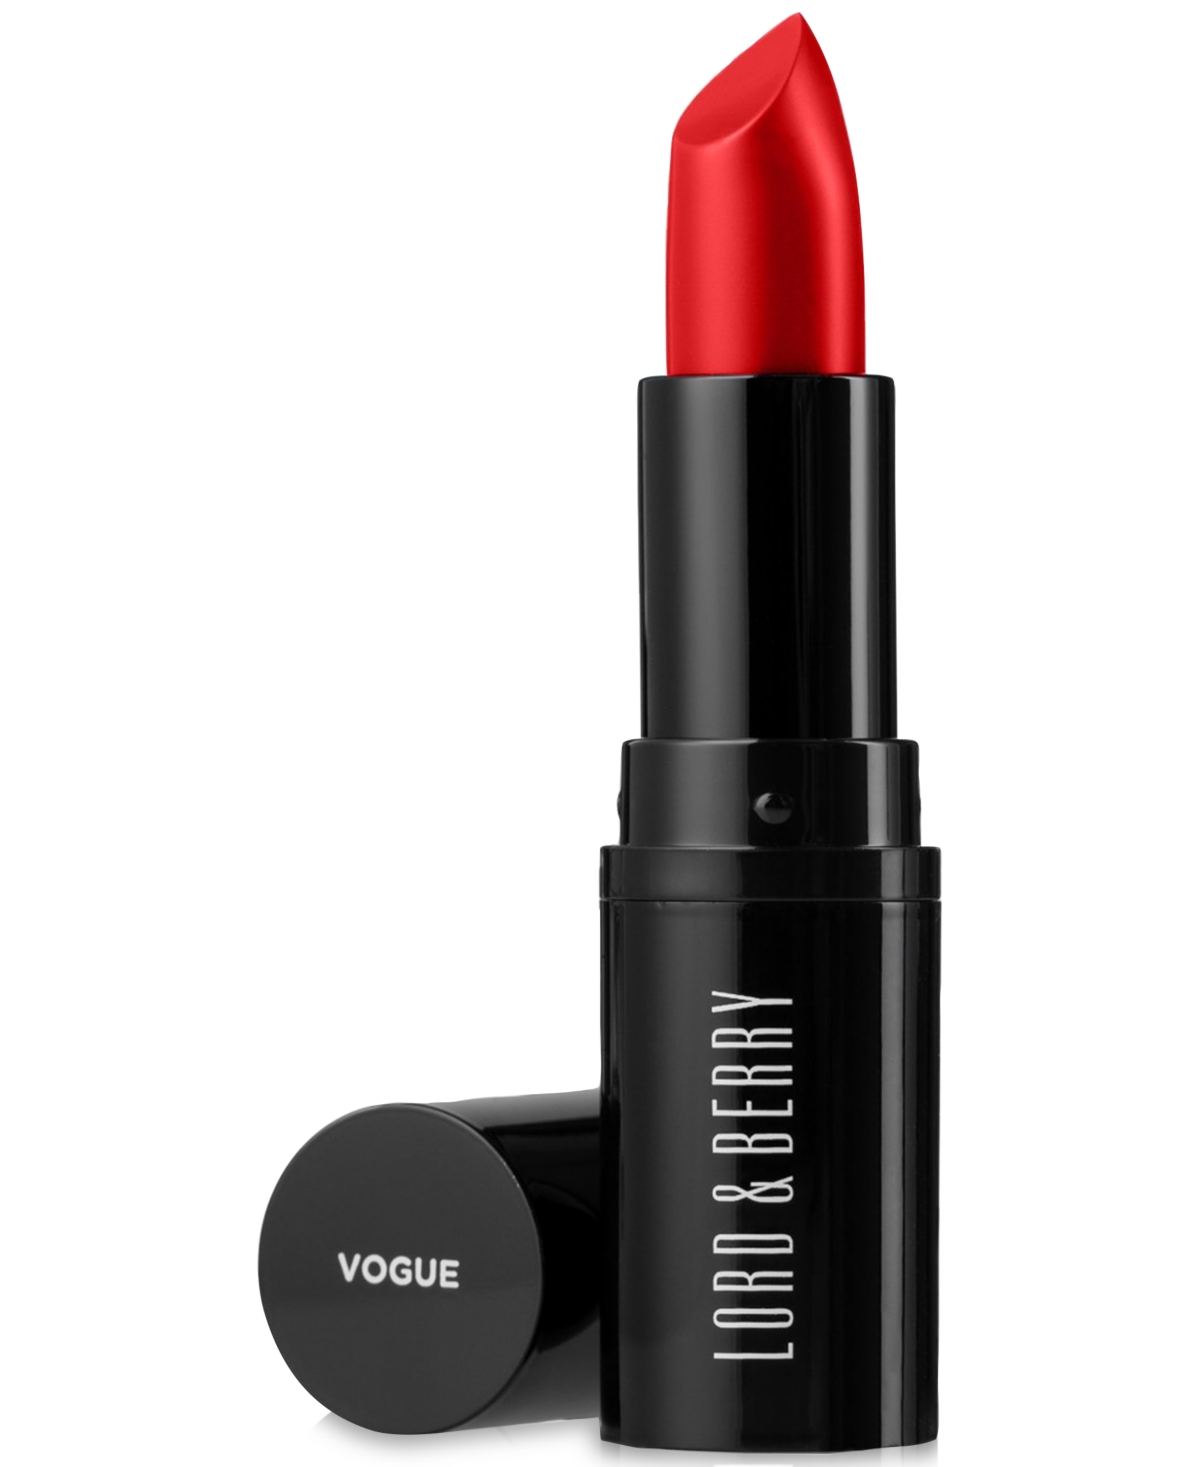 Lord & Berry Vogue Matte Lipstick In Enchanté - Medium Berry Fuchsia